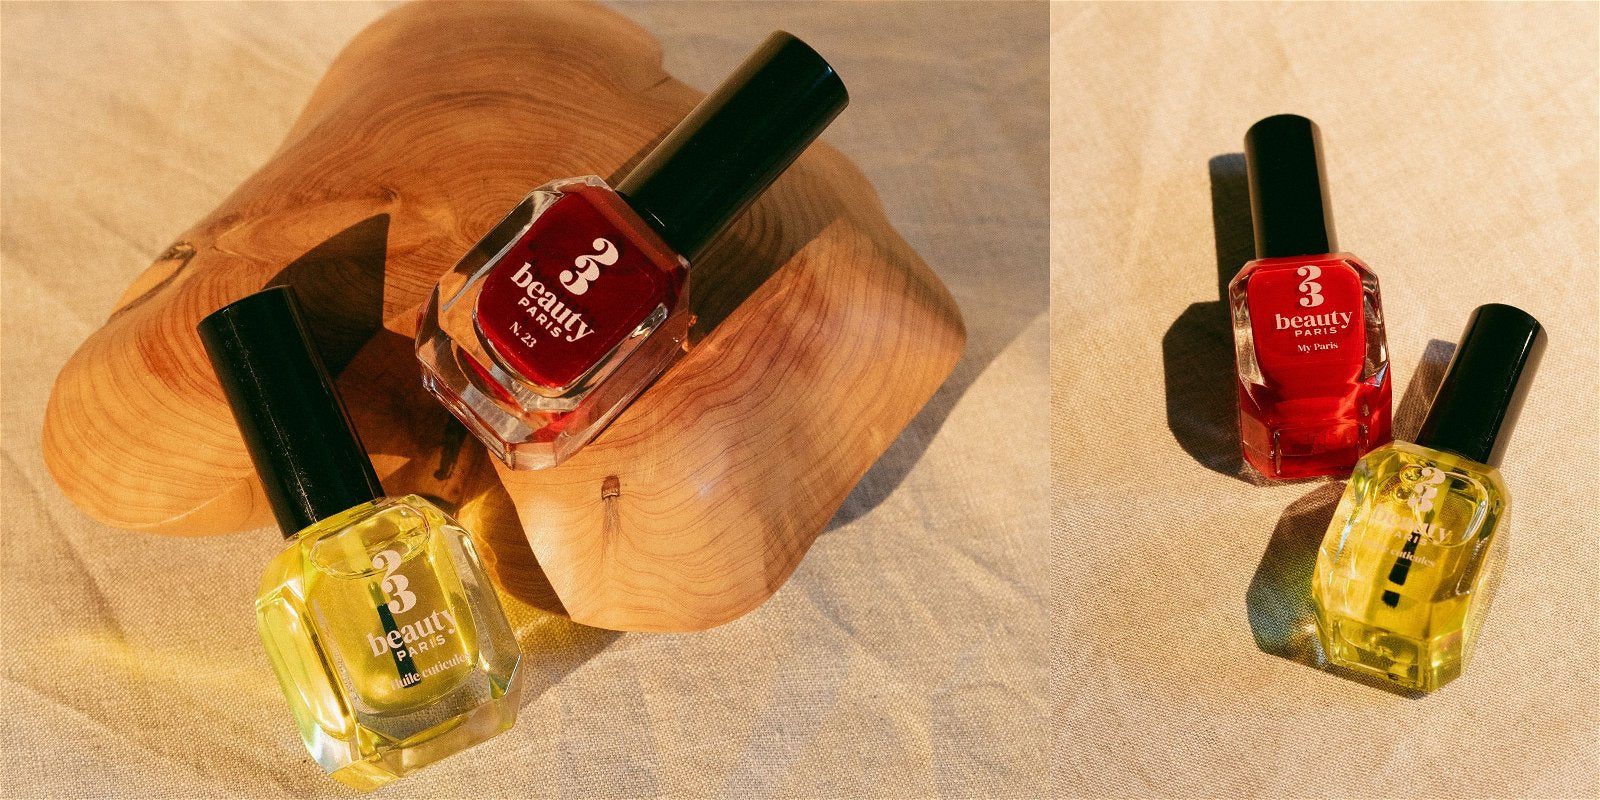 2 couleurs de vernis à ongles de la marque  23Beauty Paris, un rouge (My paris), un bordeaux (N.23) et une huile cuticules.